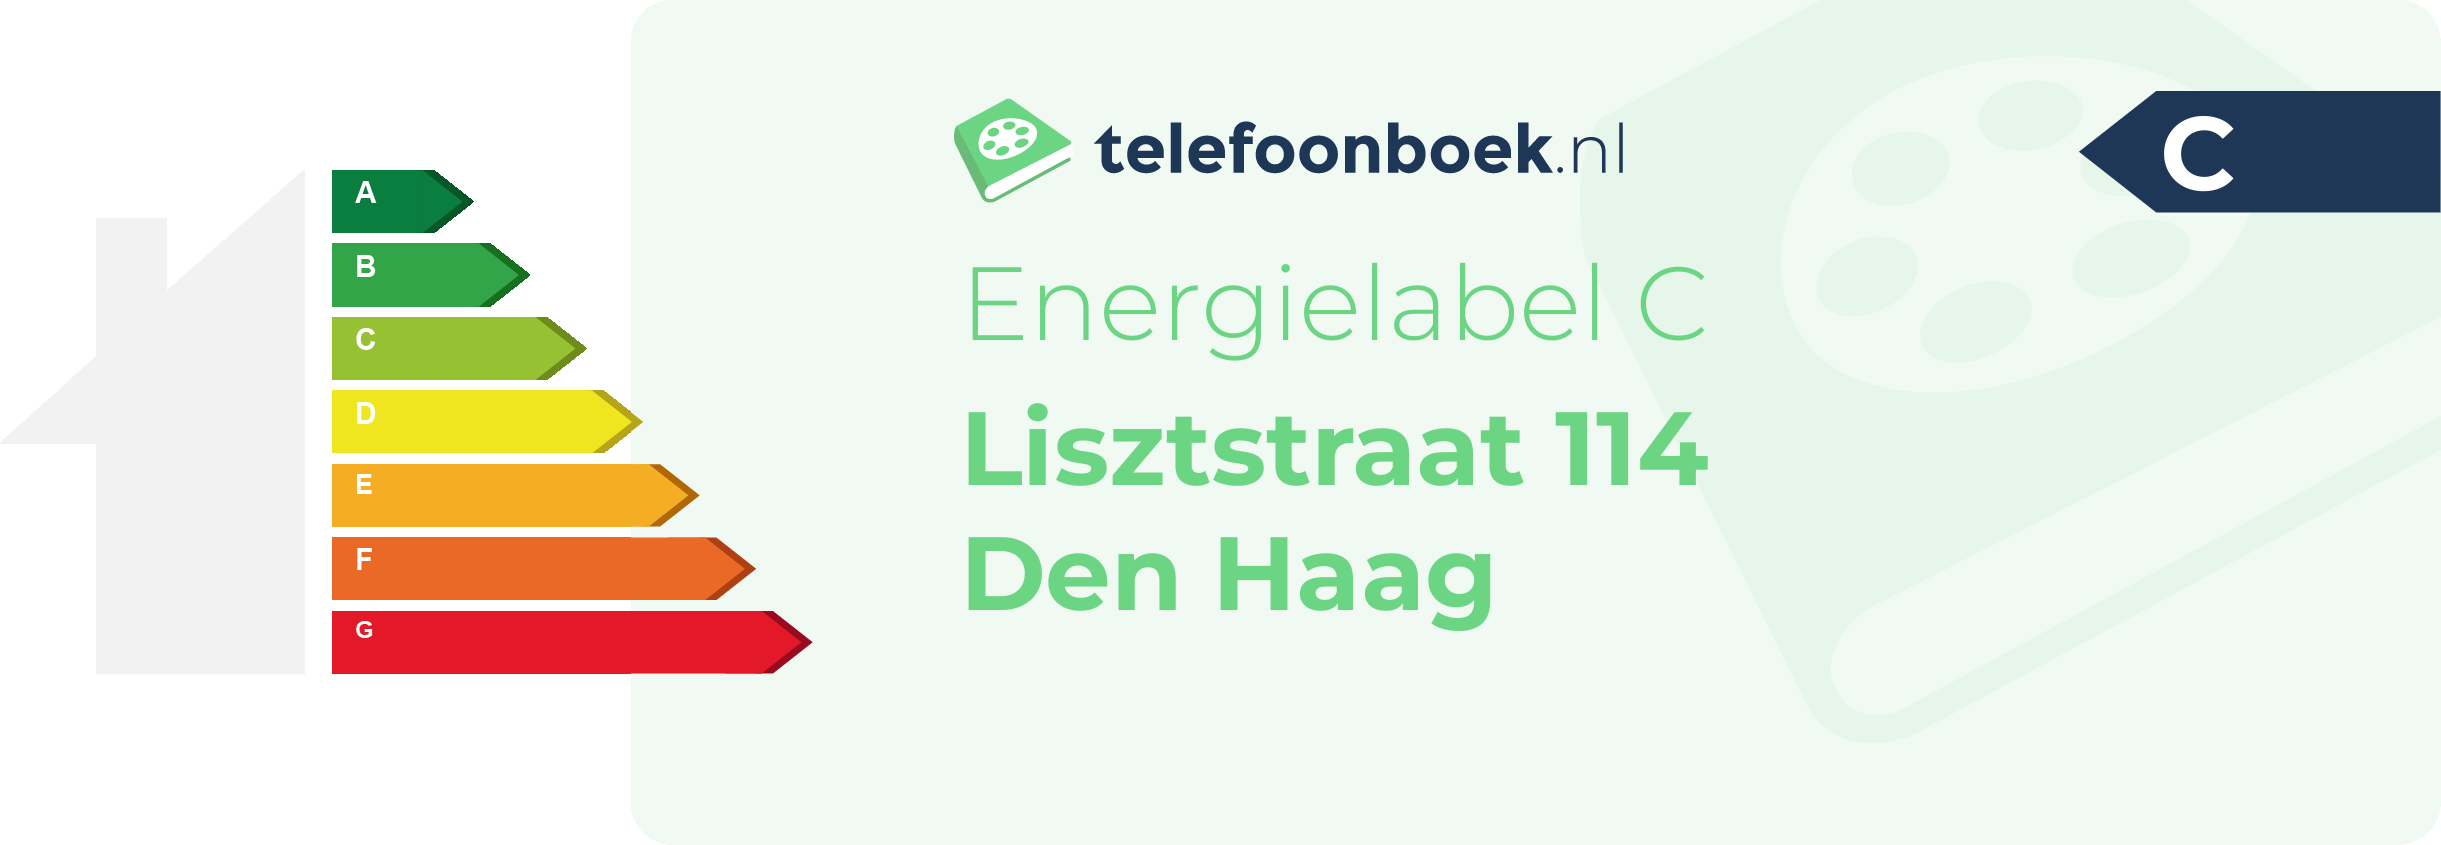 Energielabel Lisztstraat 114 Den Haag